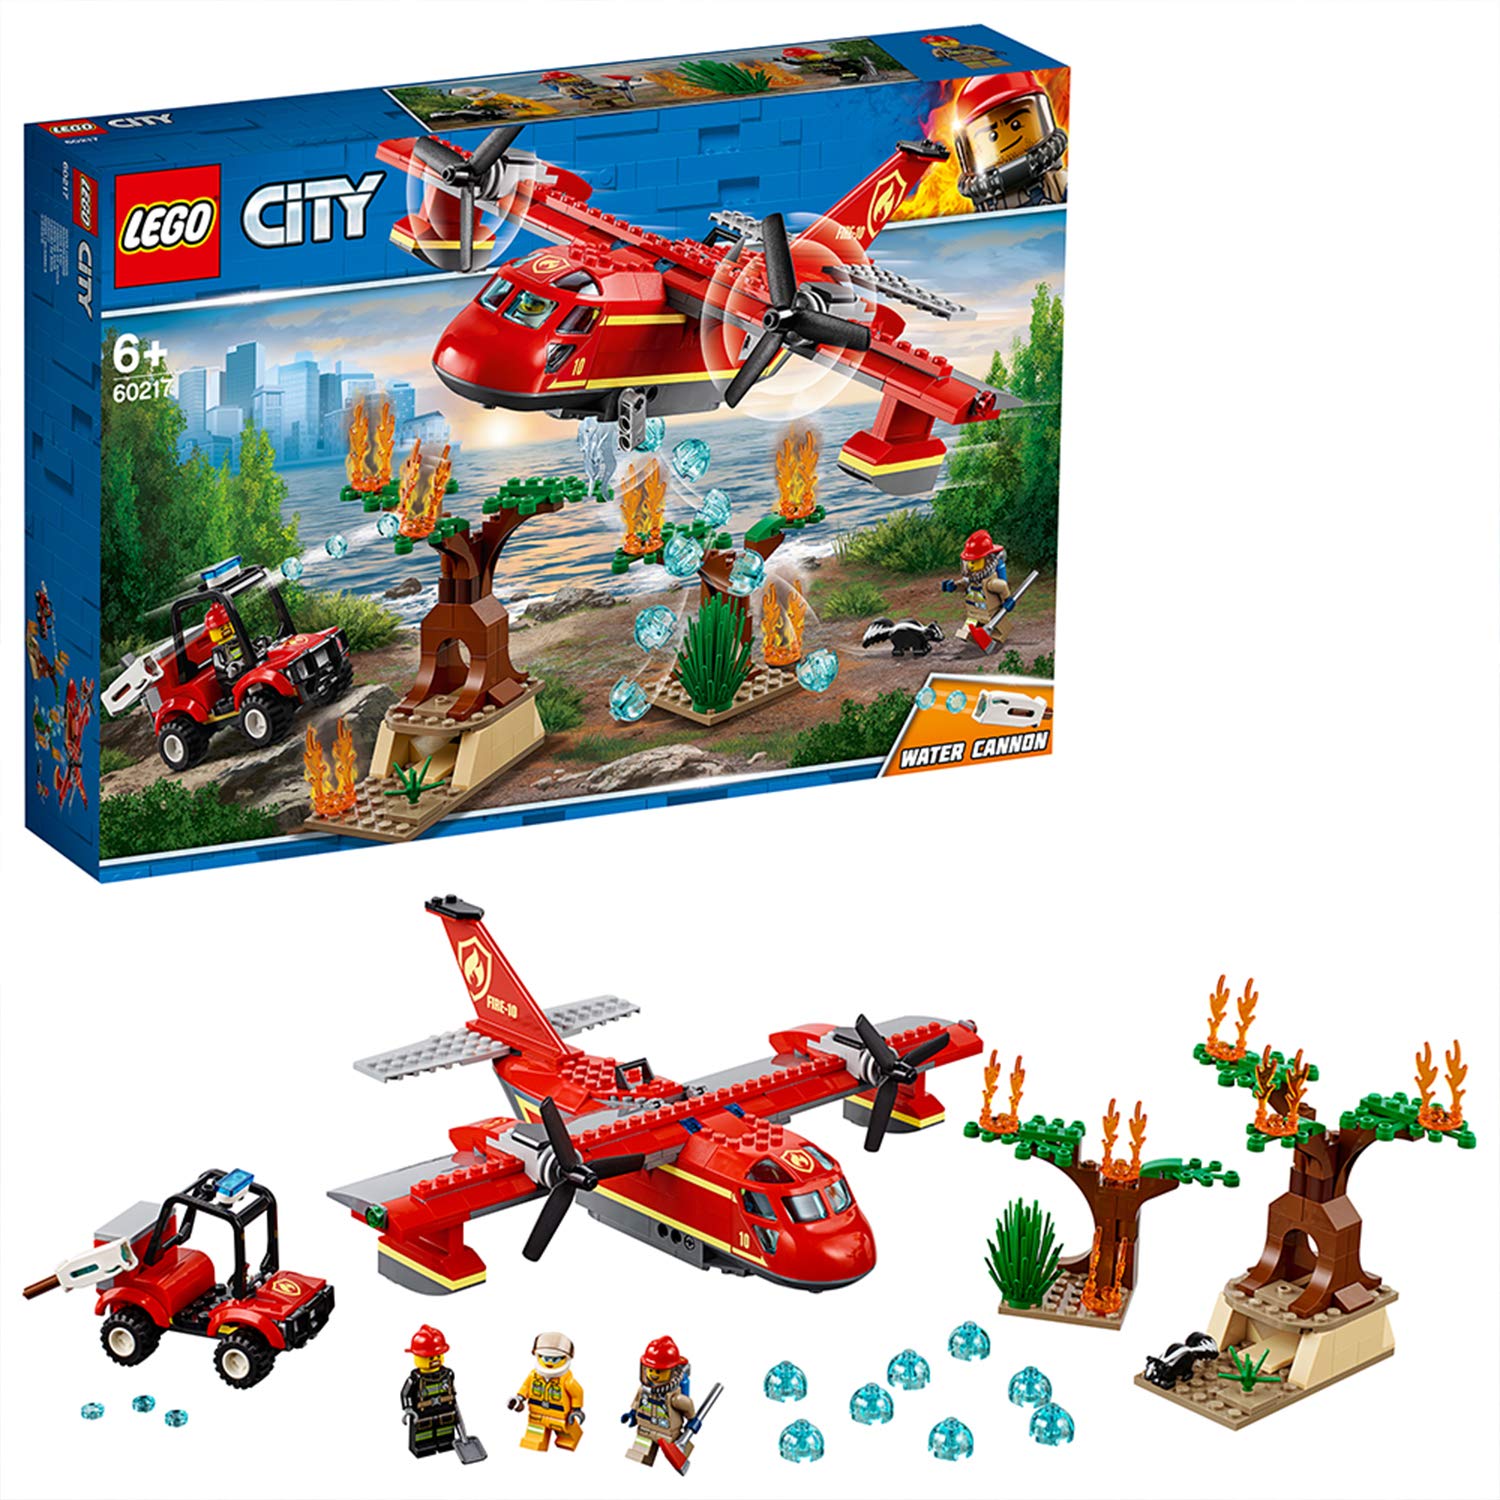 Lego City 60217 Fire Brigade Fire Plane